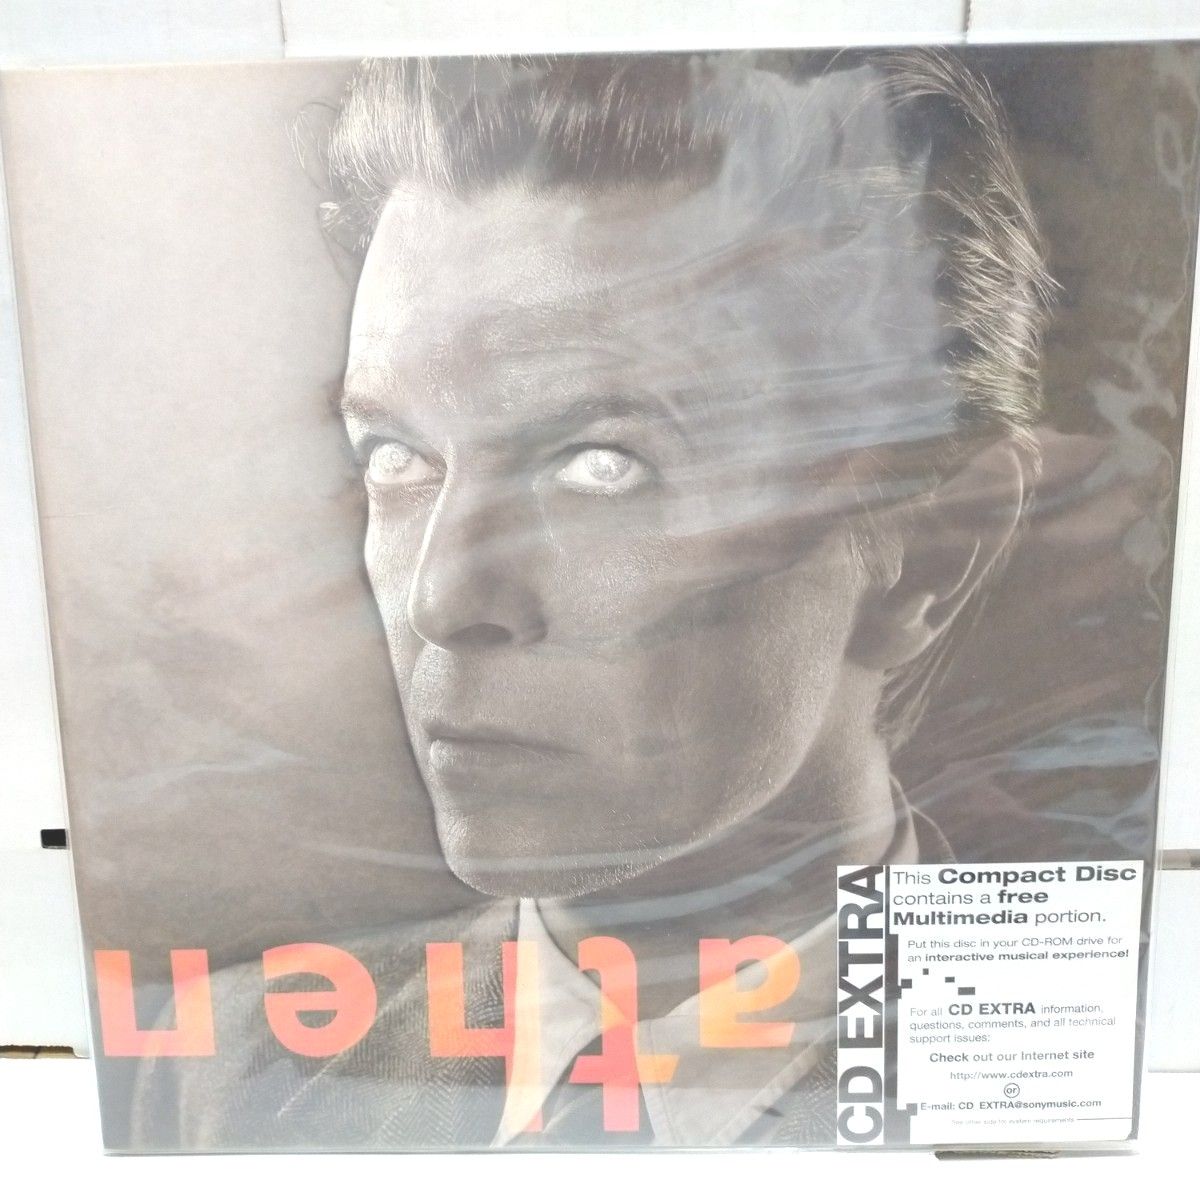 US限定盤CD/David Bowie デヴィッド・ボウイ/Heathen デビッド・ボウイ Limited CK86657